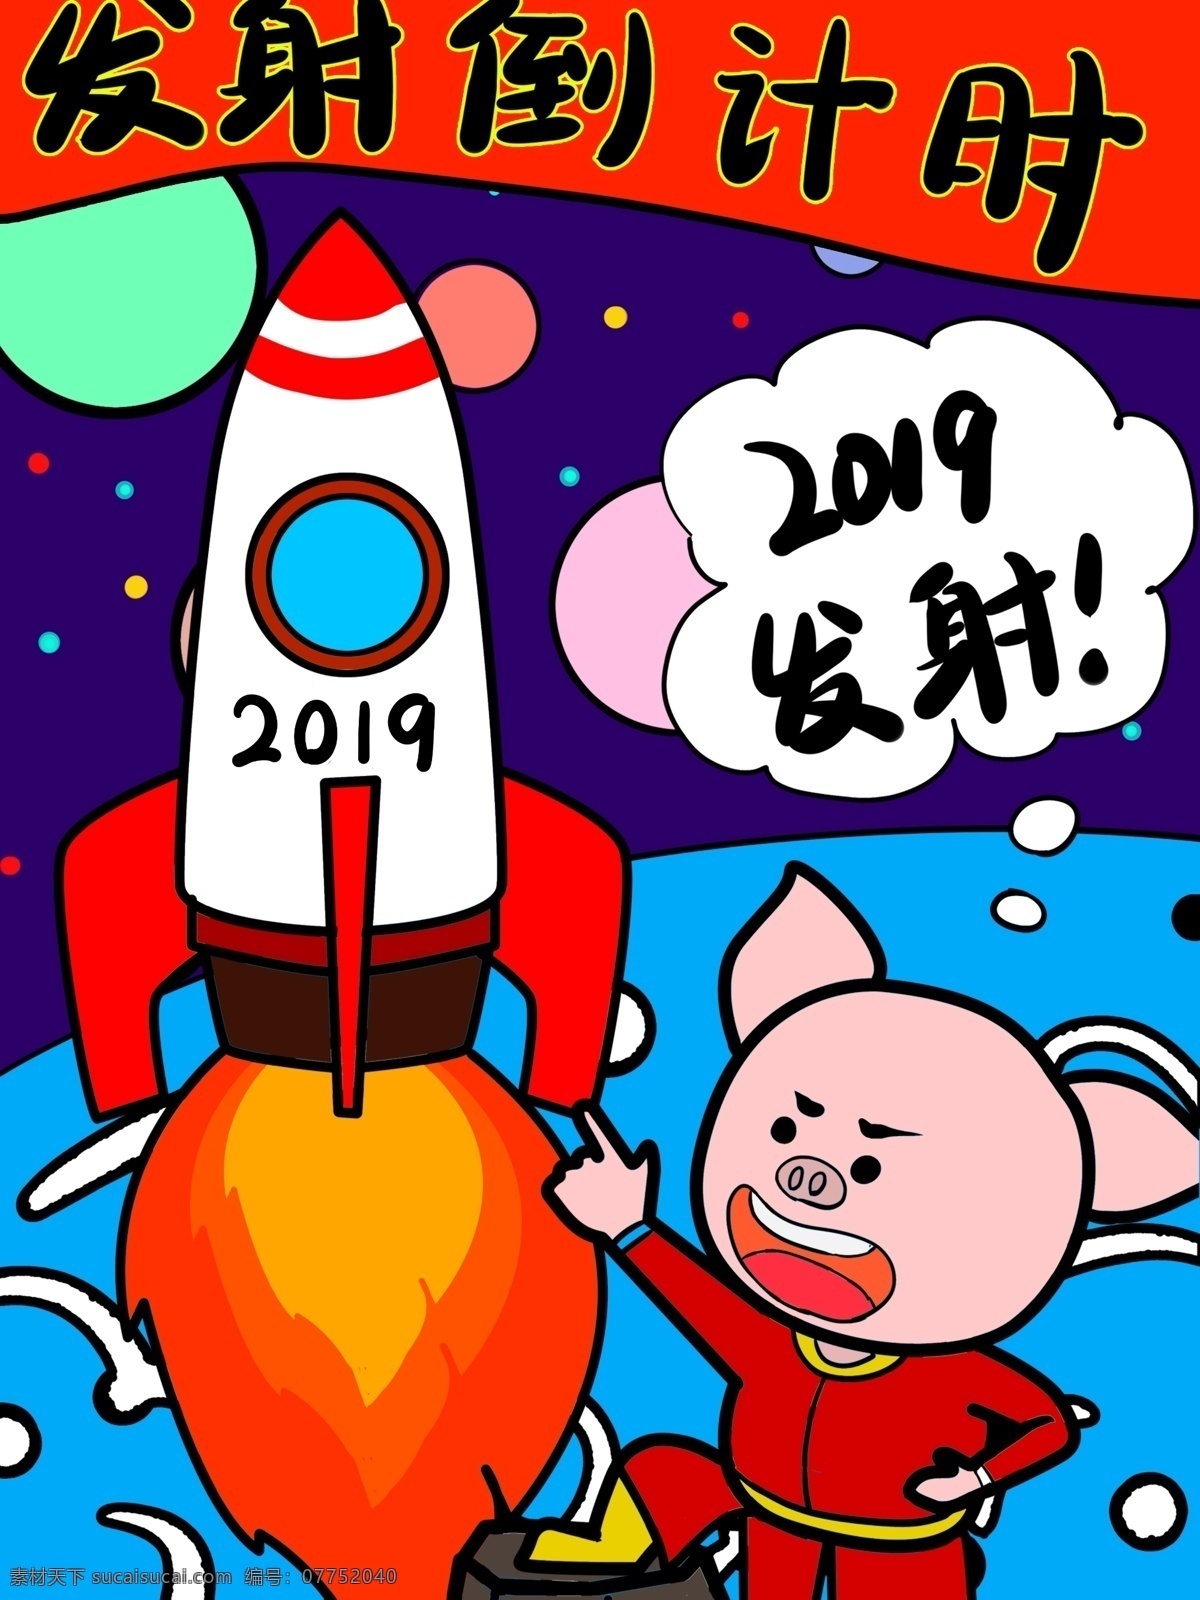 2019 倒计时 号 火箭 发射 喜庆 配图 壁纸 猪年